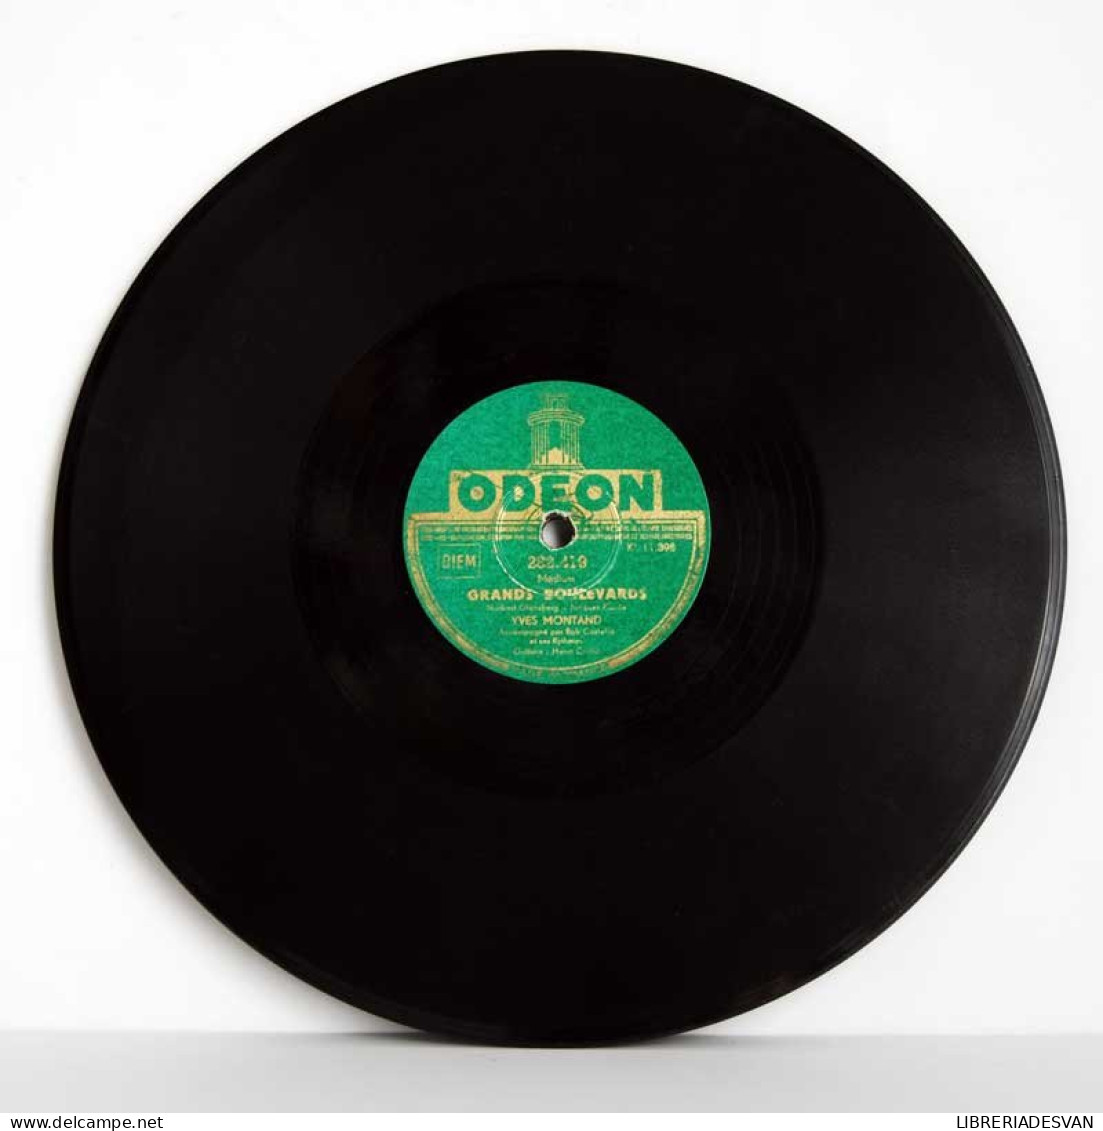 Yves Montand - Grands Boulevards / Rue Lepic. Disco De Pizarra - 78 Rpm - Gramophone Records